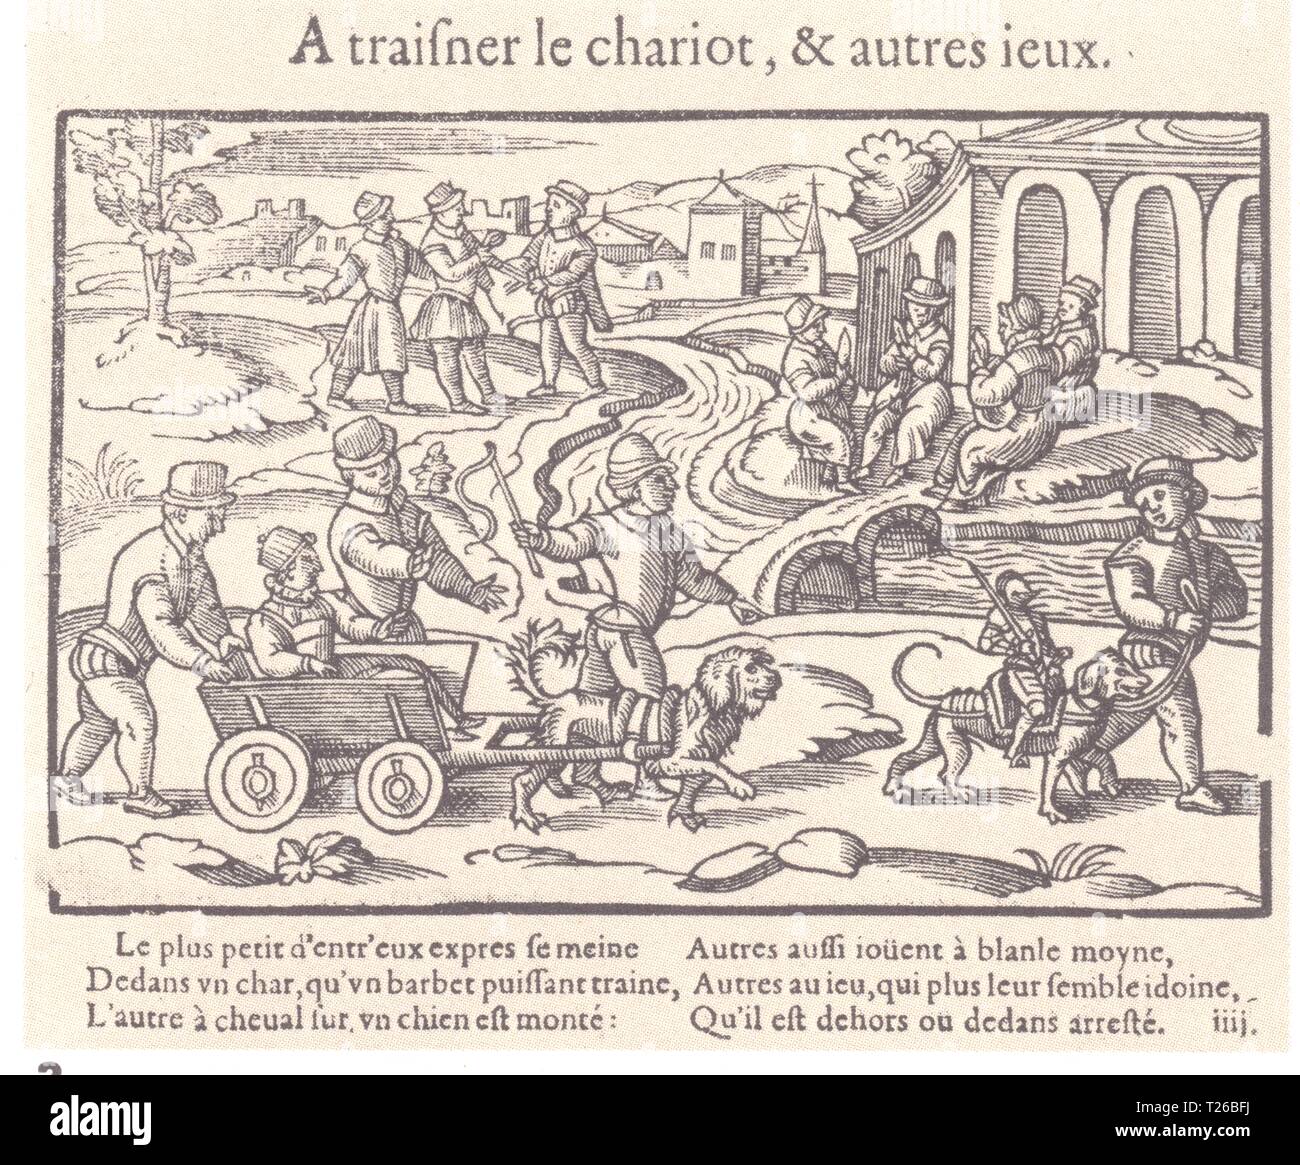 Jeux d'enfants au XVI e siècle. Traisner le chariot et autres jeux Stock Photo